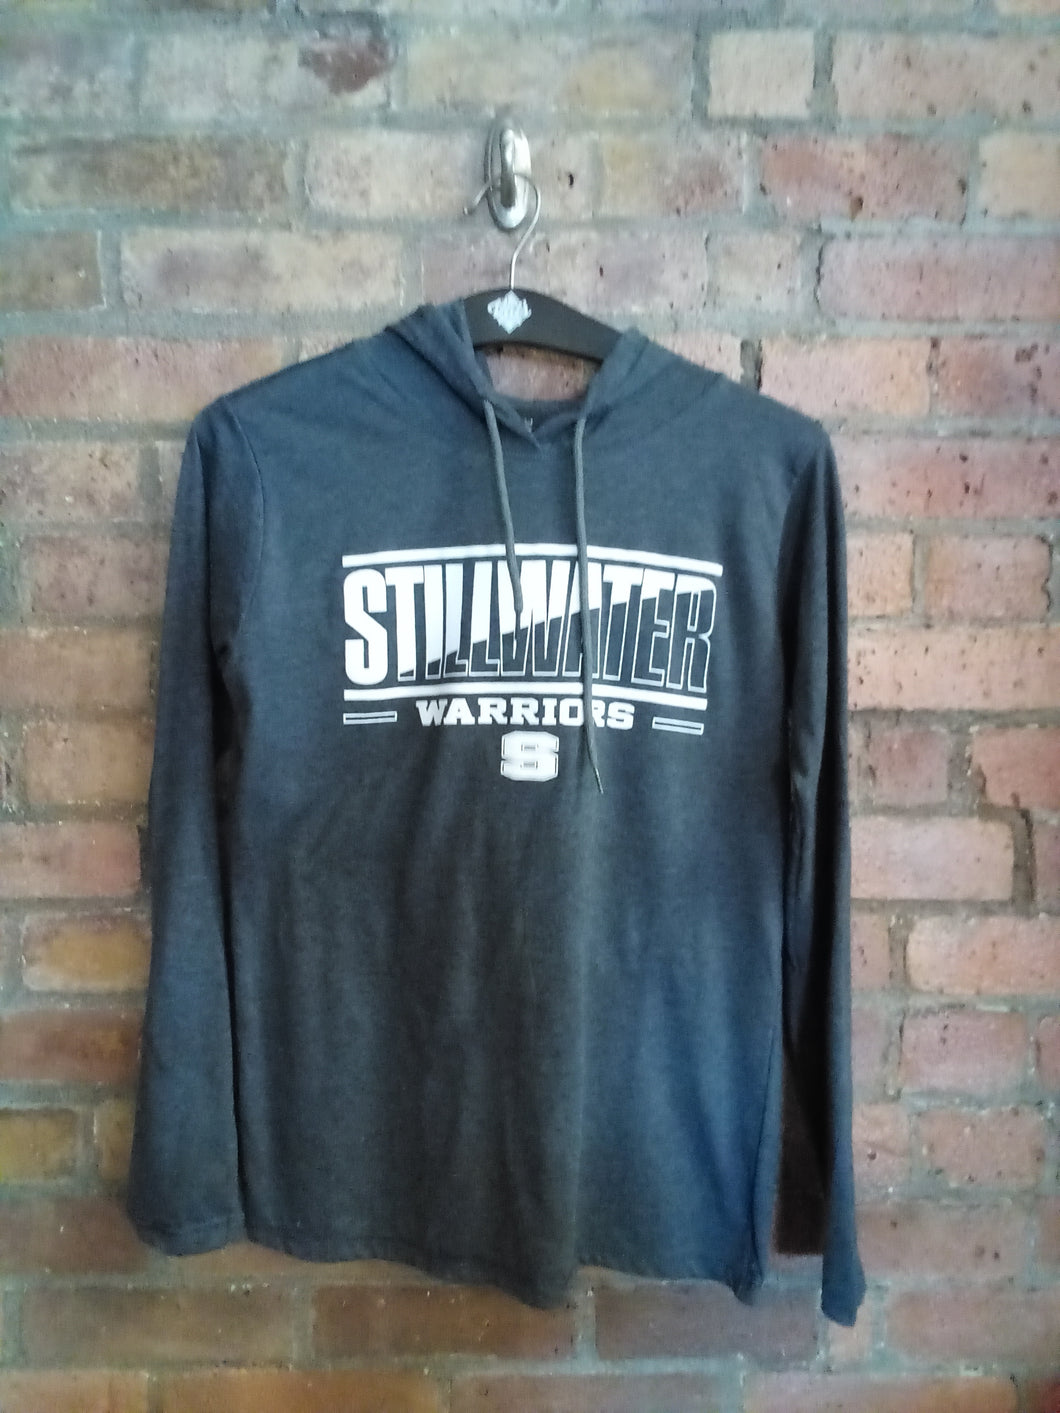 CLEARANCE - Stillwater Warriors Lightweight Hooded Shirt - Size Medium